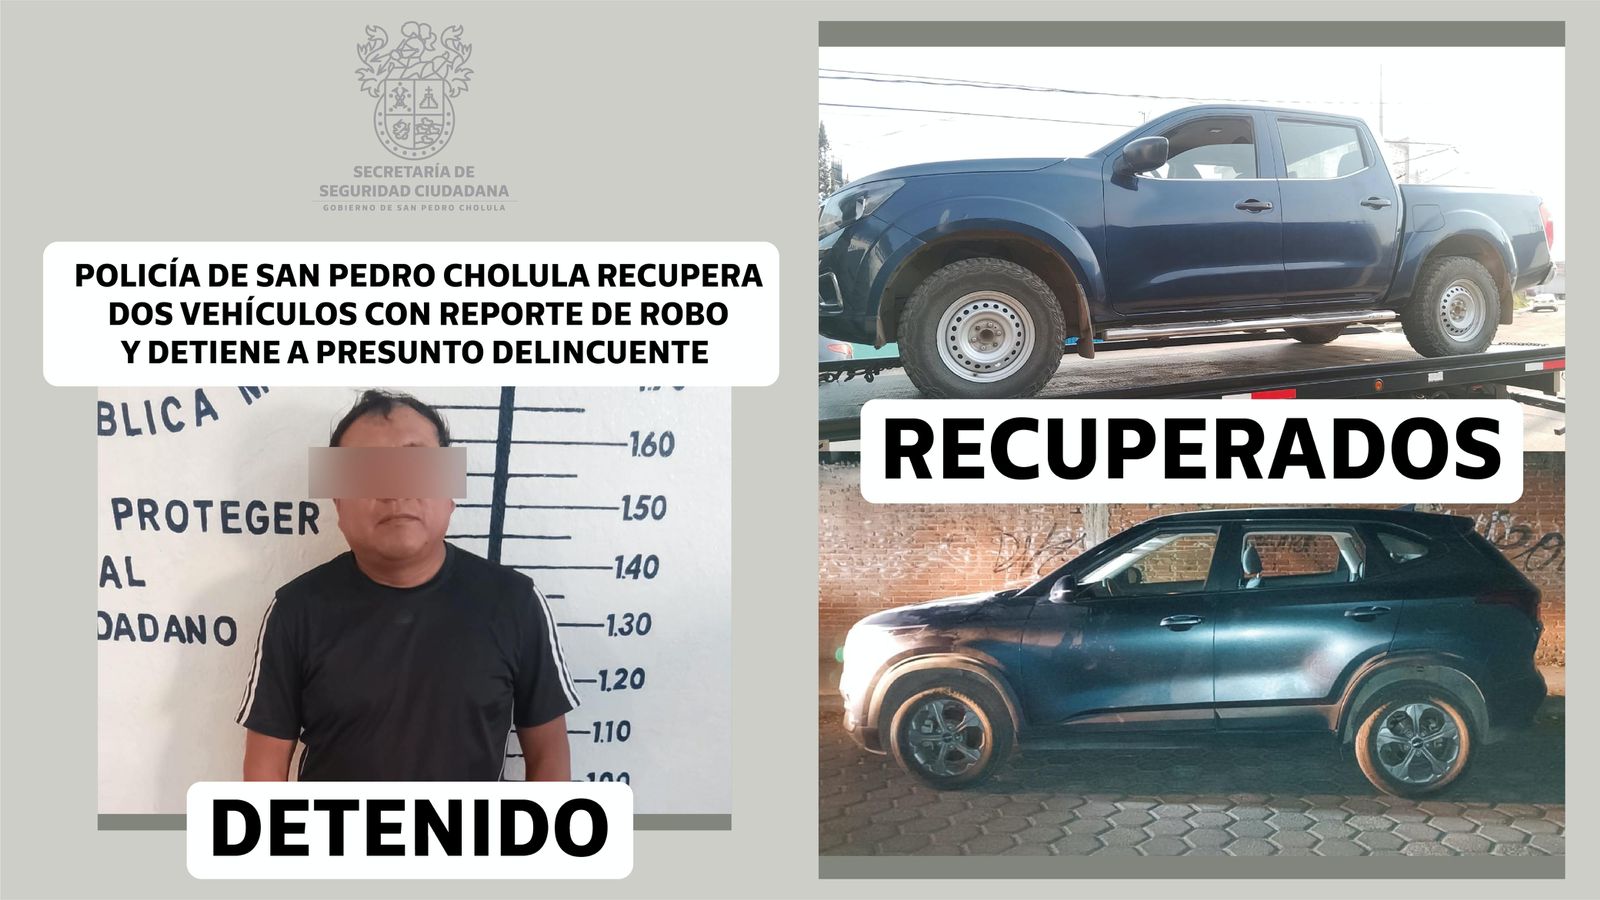 Operativo exitoso: Policía de San Pedro Cholula detiene a presunto delincuente y recupera vehículos